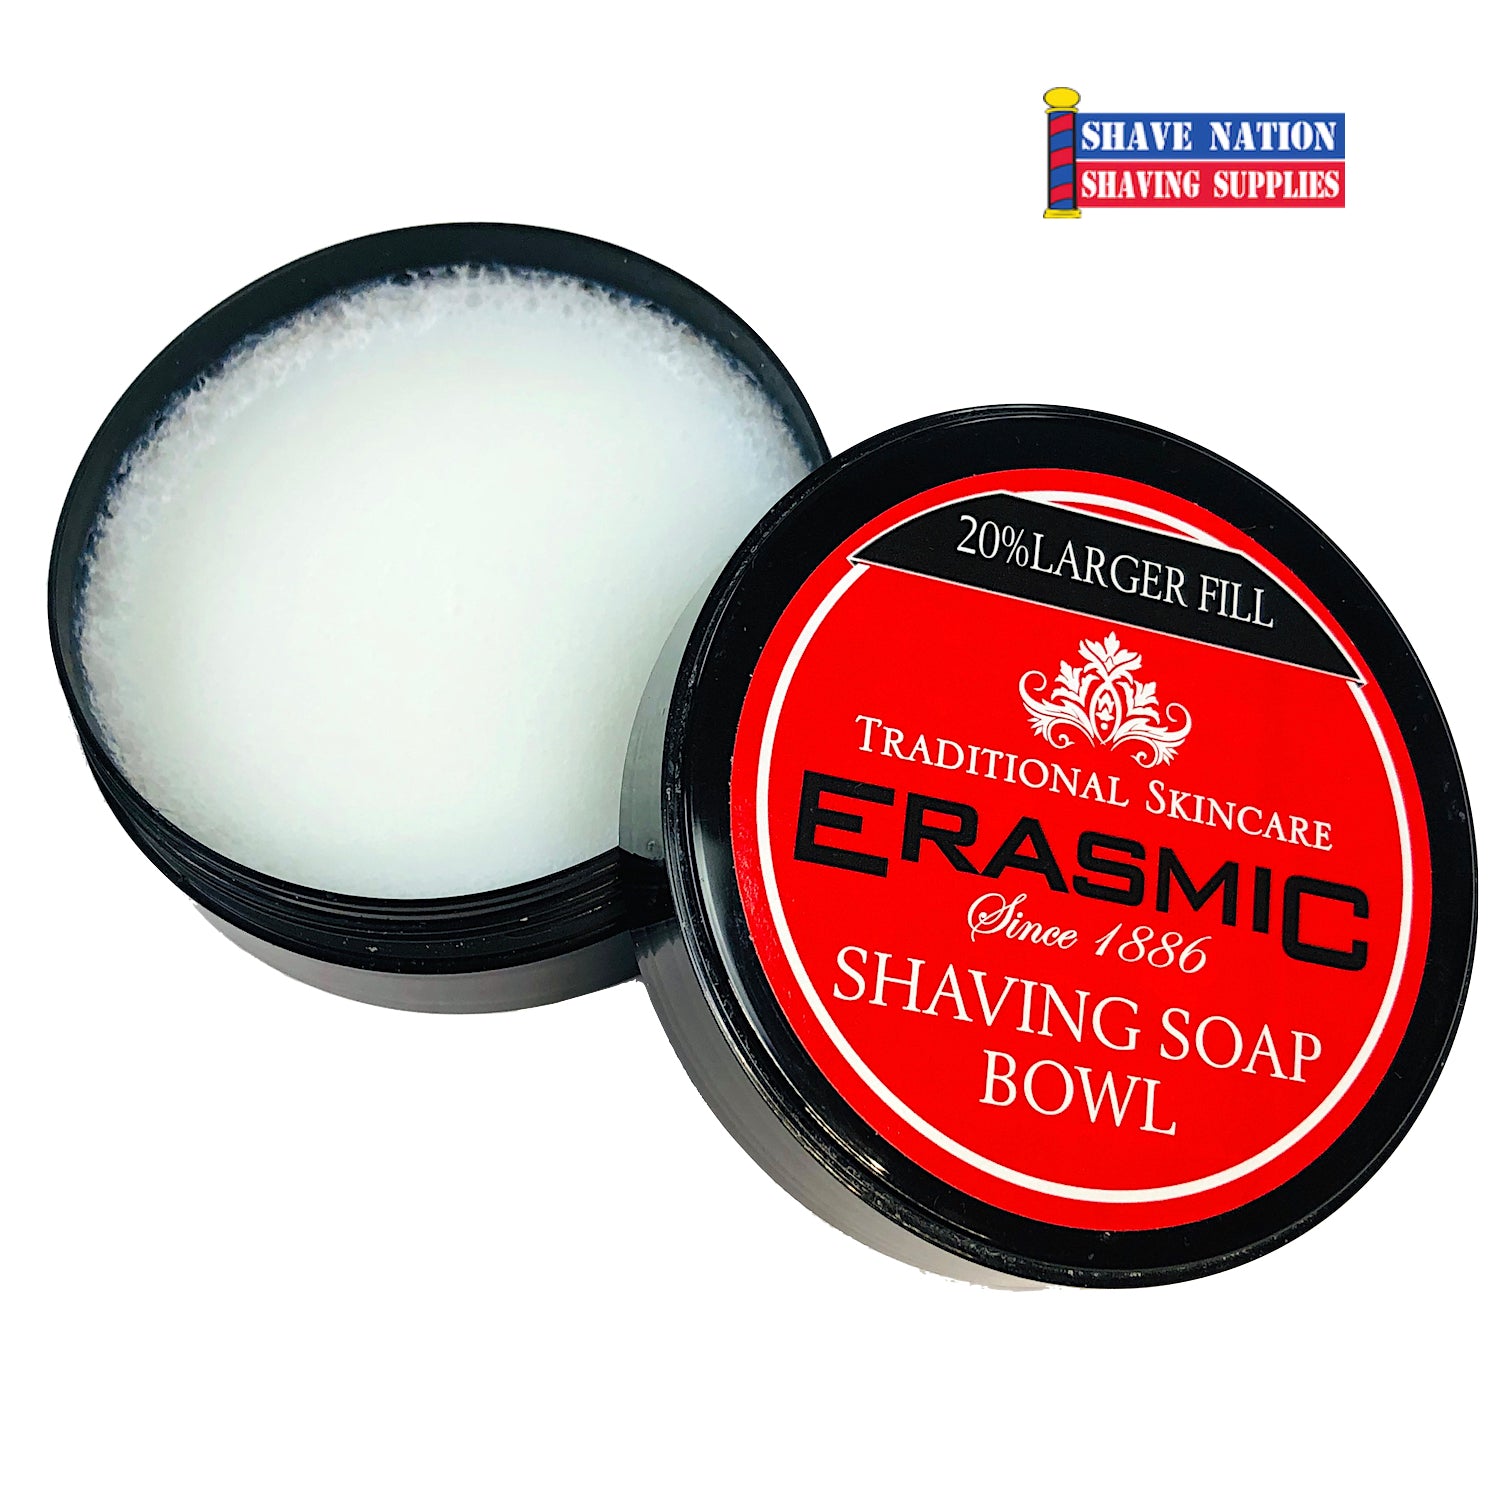 Erasmic Shaving Soap in Bowl